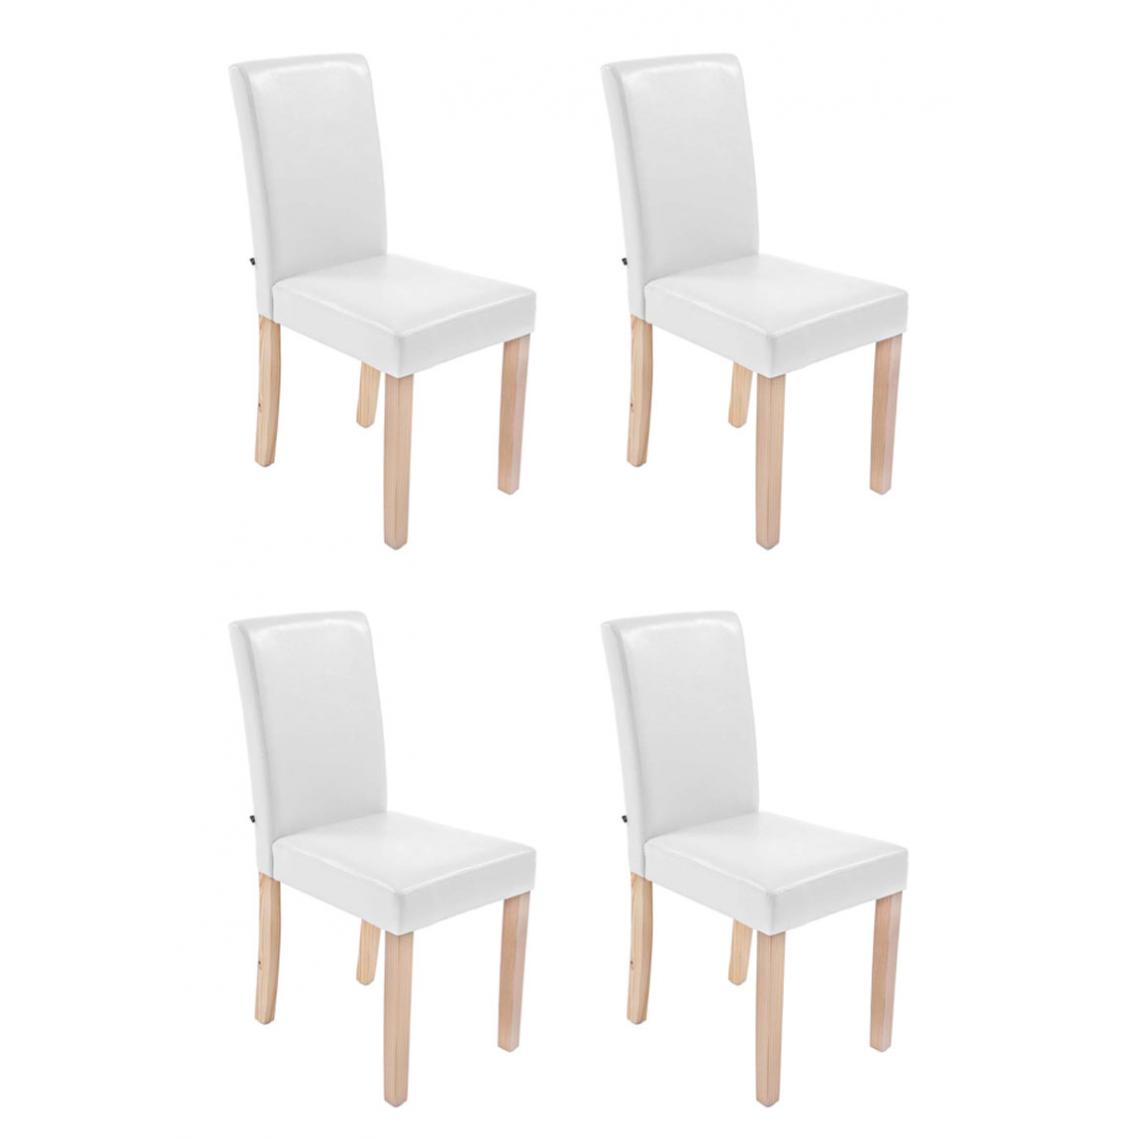 Icaverne - Splendide Lot de 4 chaises de salle à manger gamme Rabat natura couleur blanc - Chaises